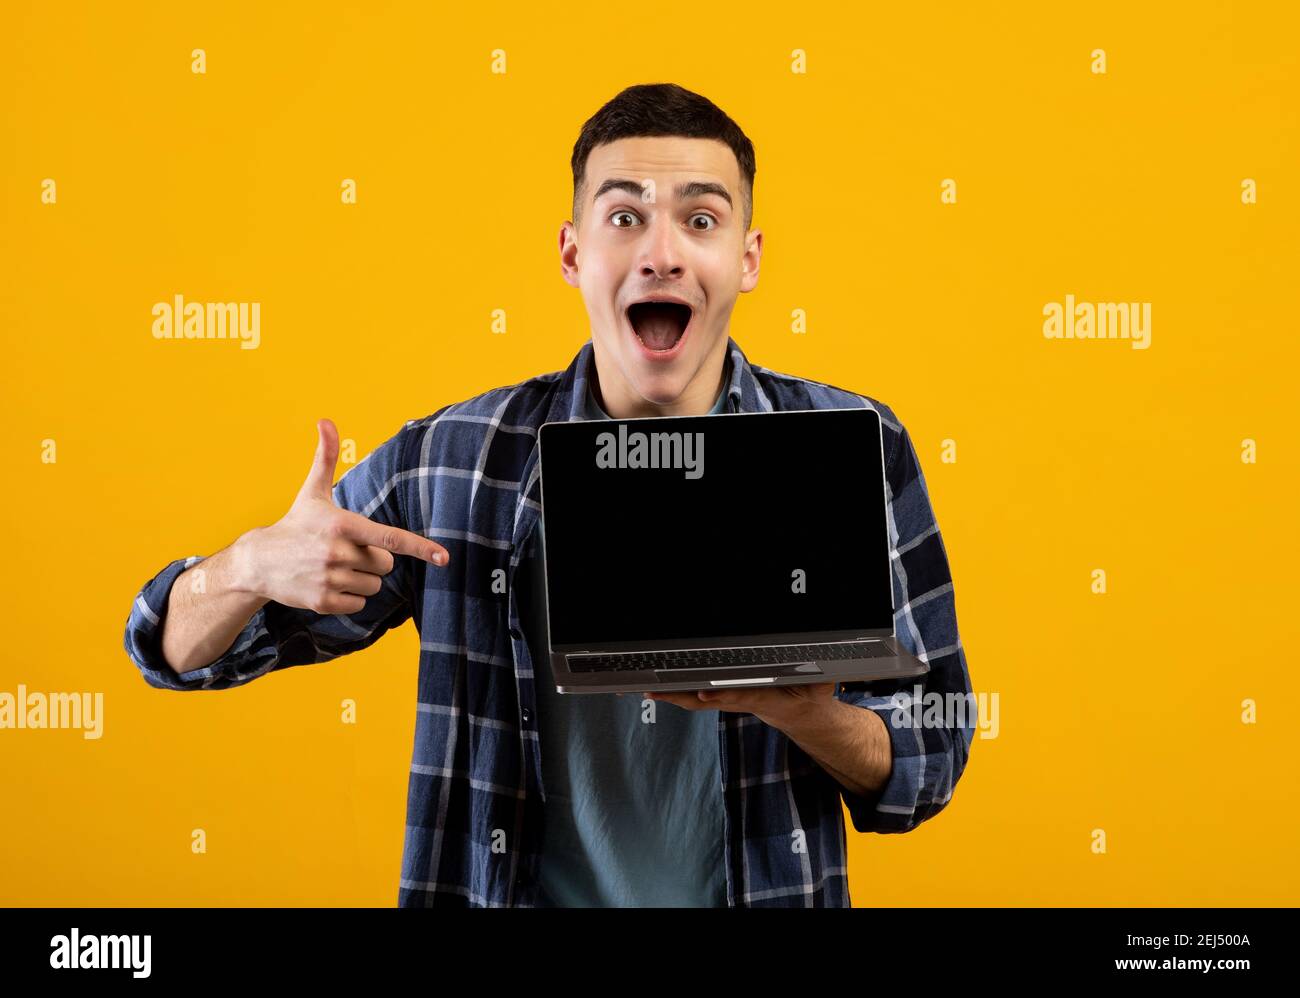 Un homme caucasien excité pointant sur un écran d'ordinateur portable vide avec maquette pour la conception de sites web sur fond orange studio Banque D'Images